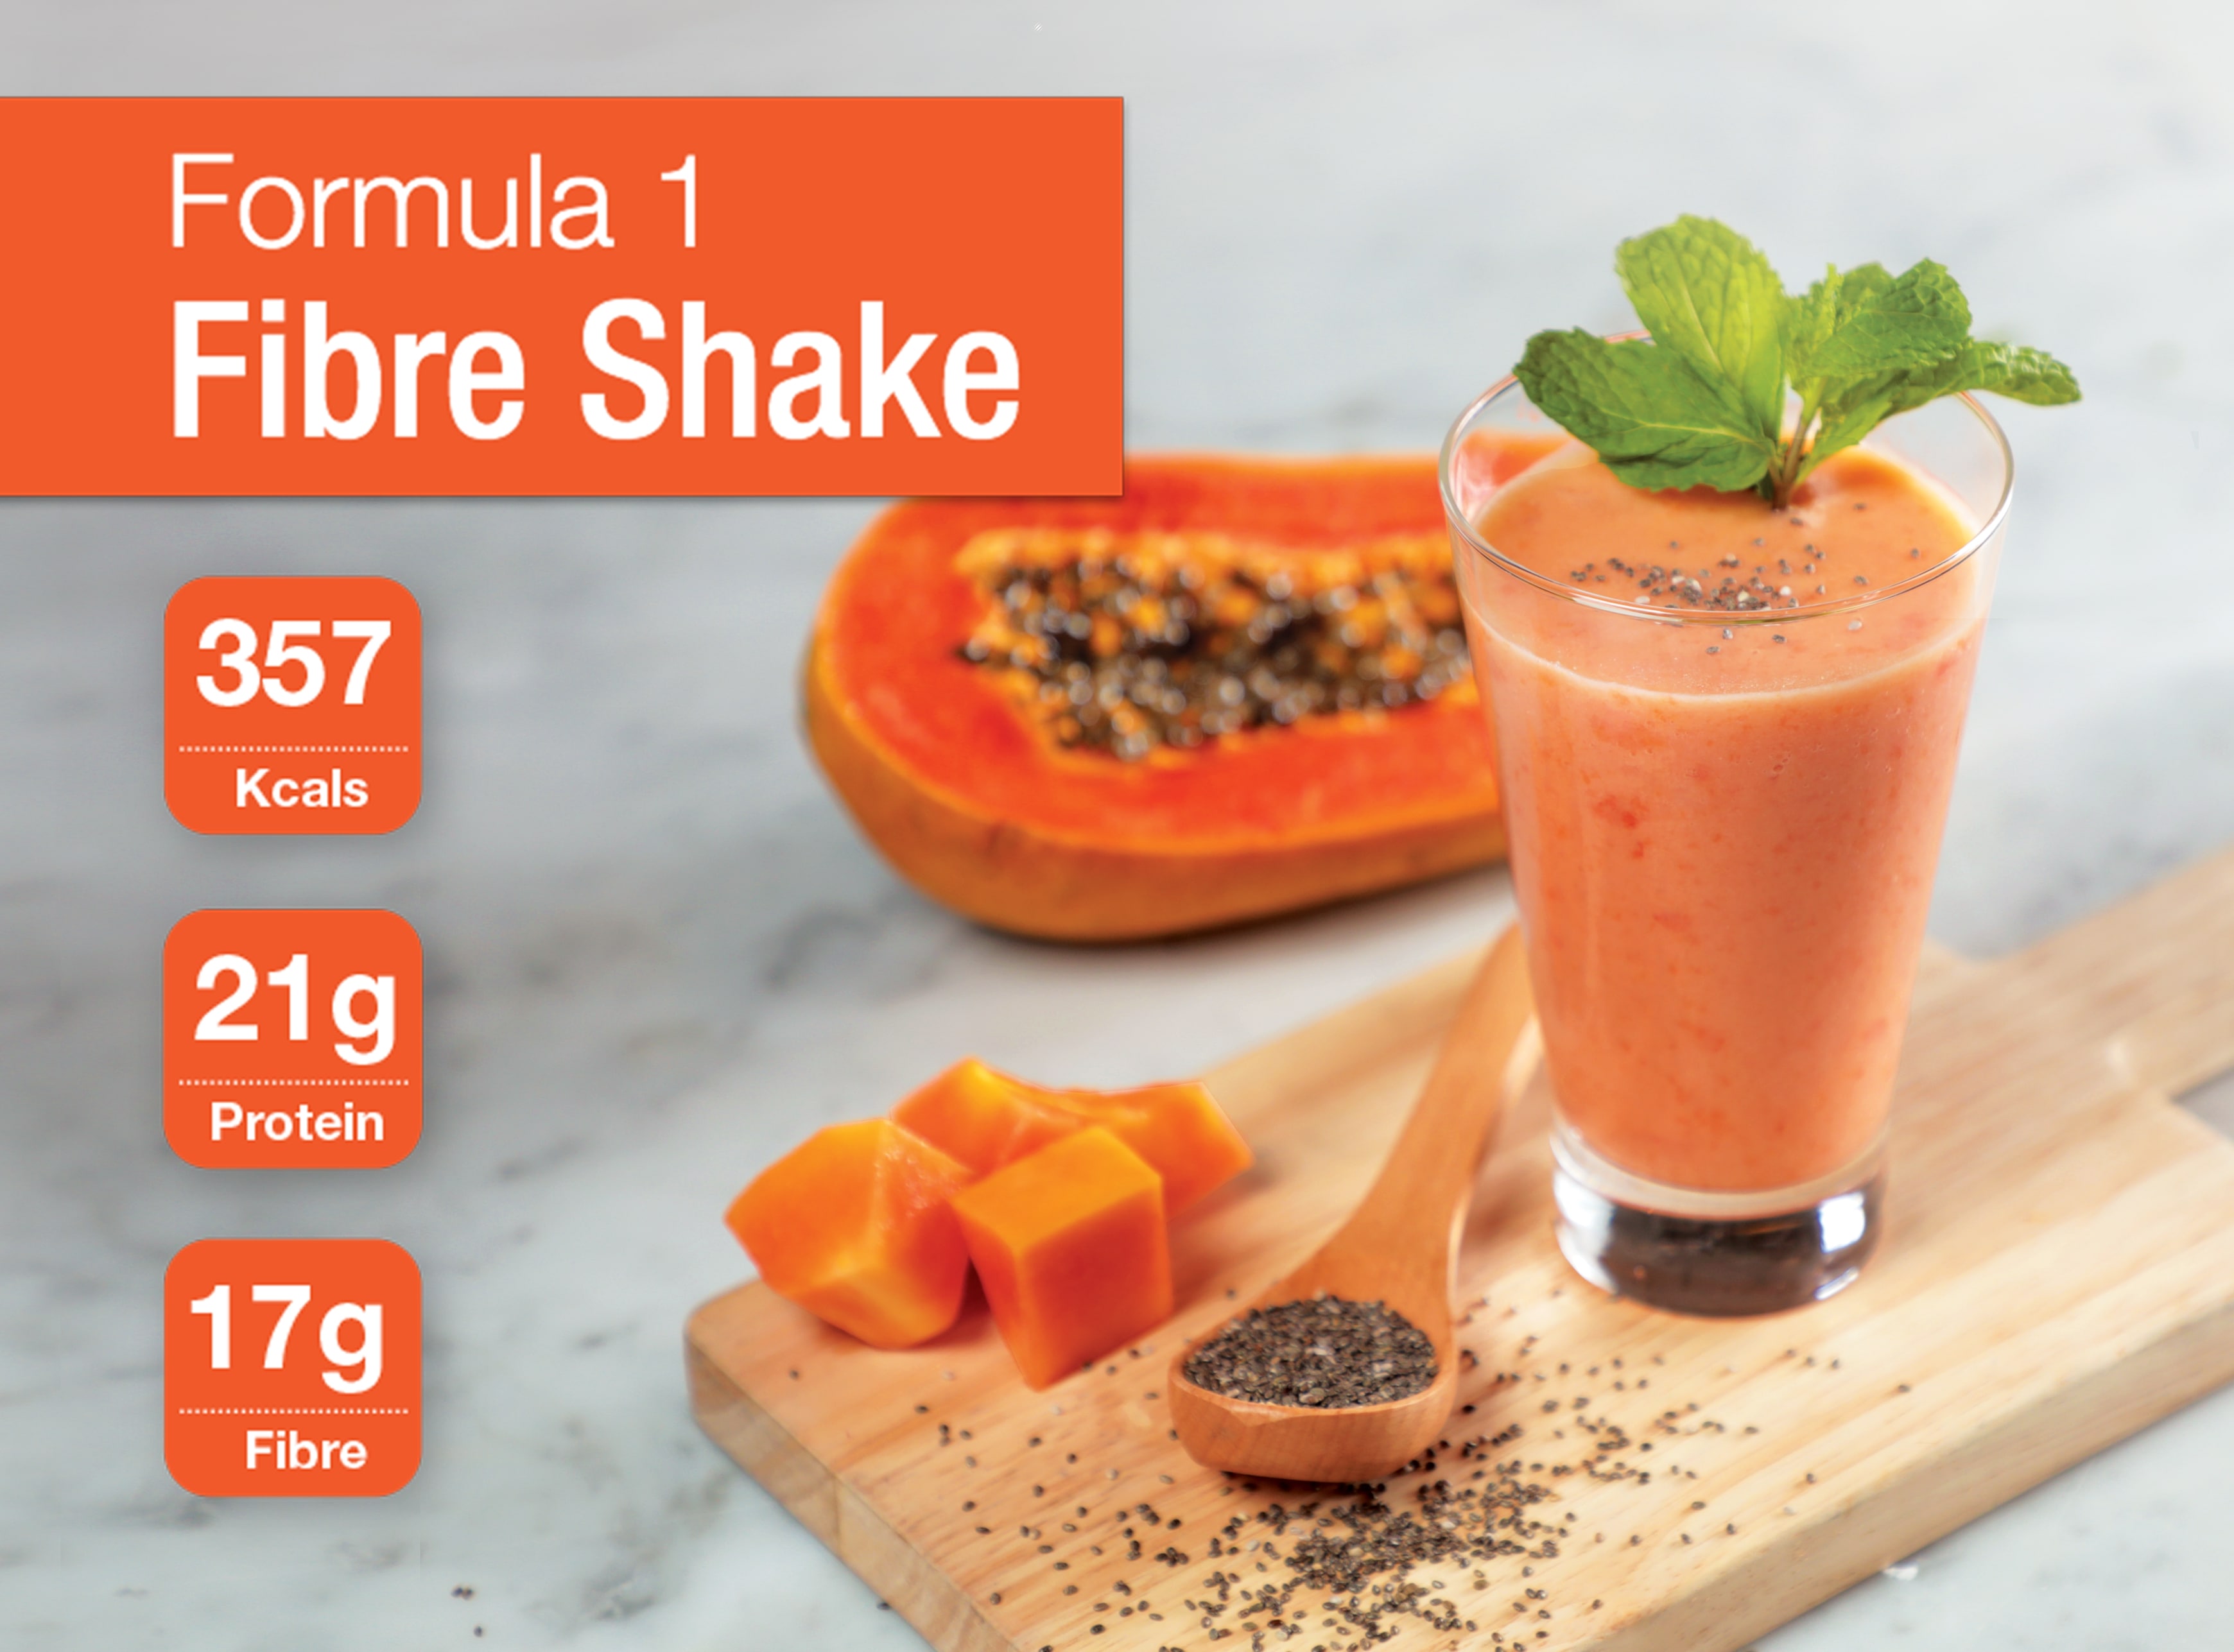 Formula 1 Fibre Shake Recipe